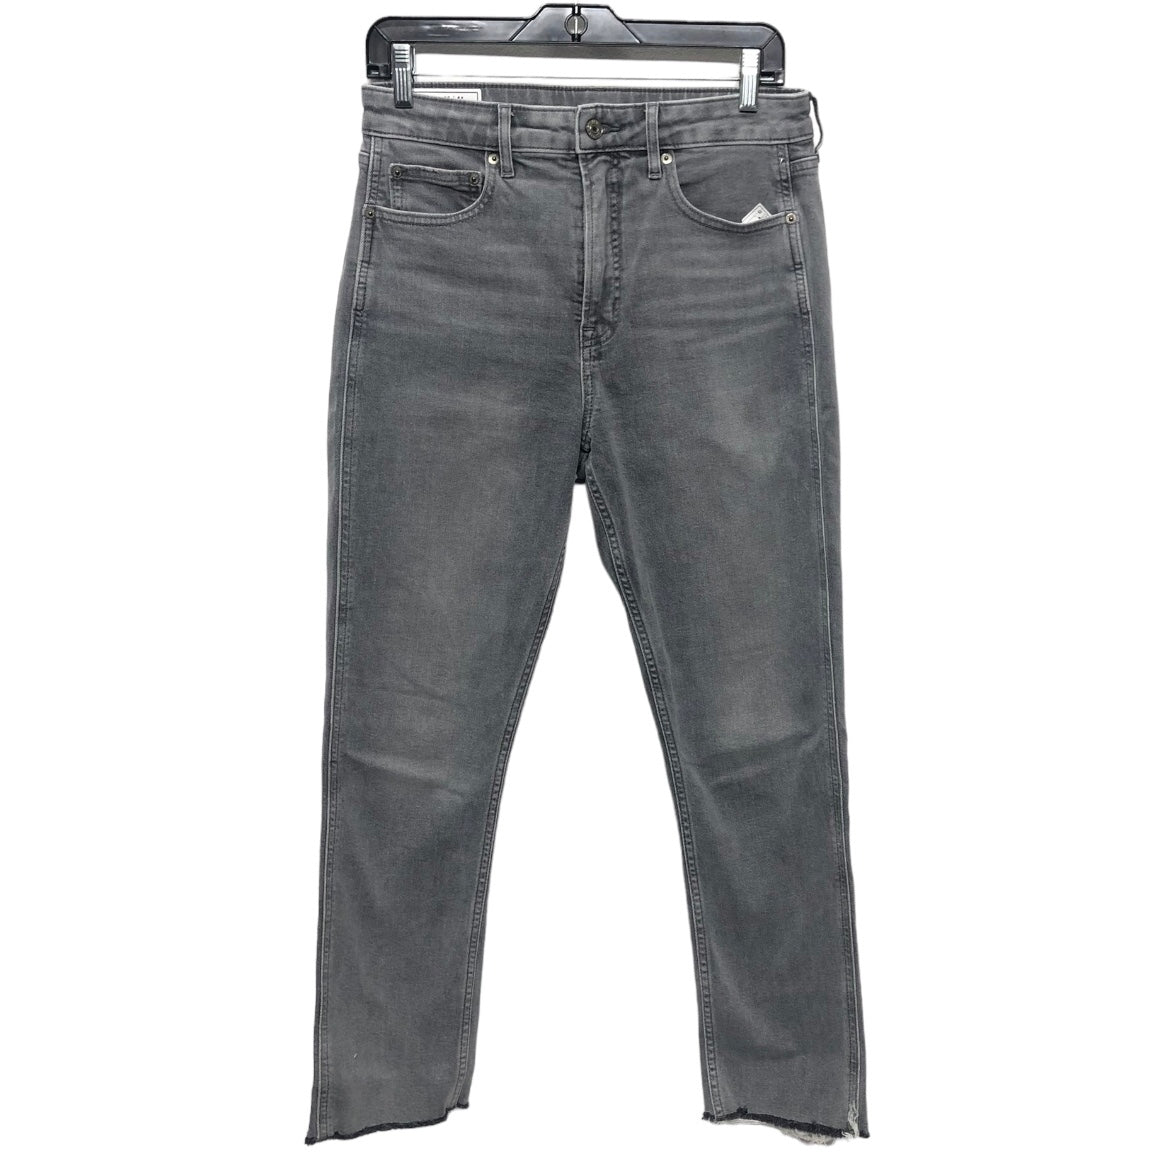 Grey Jeans Skinny Gap, Size 8